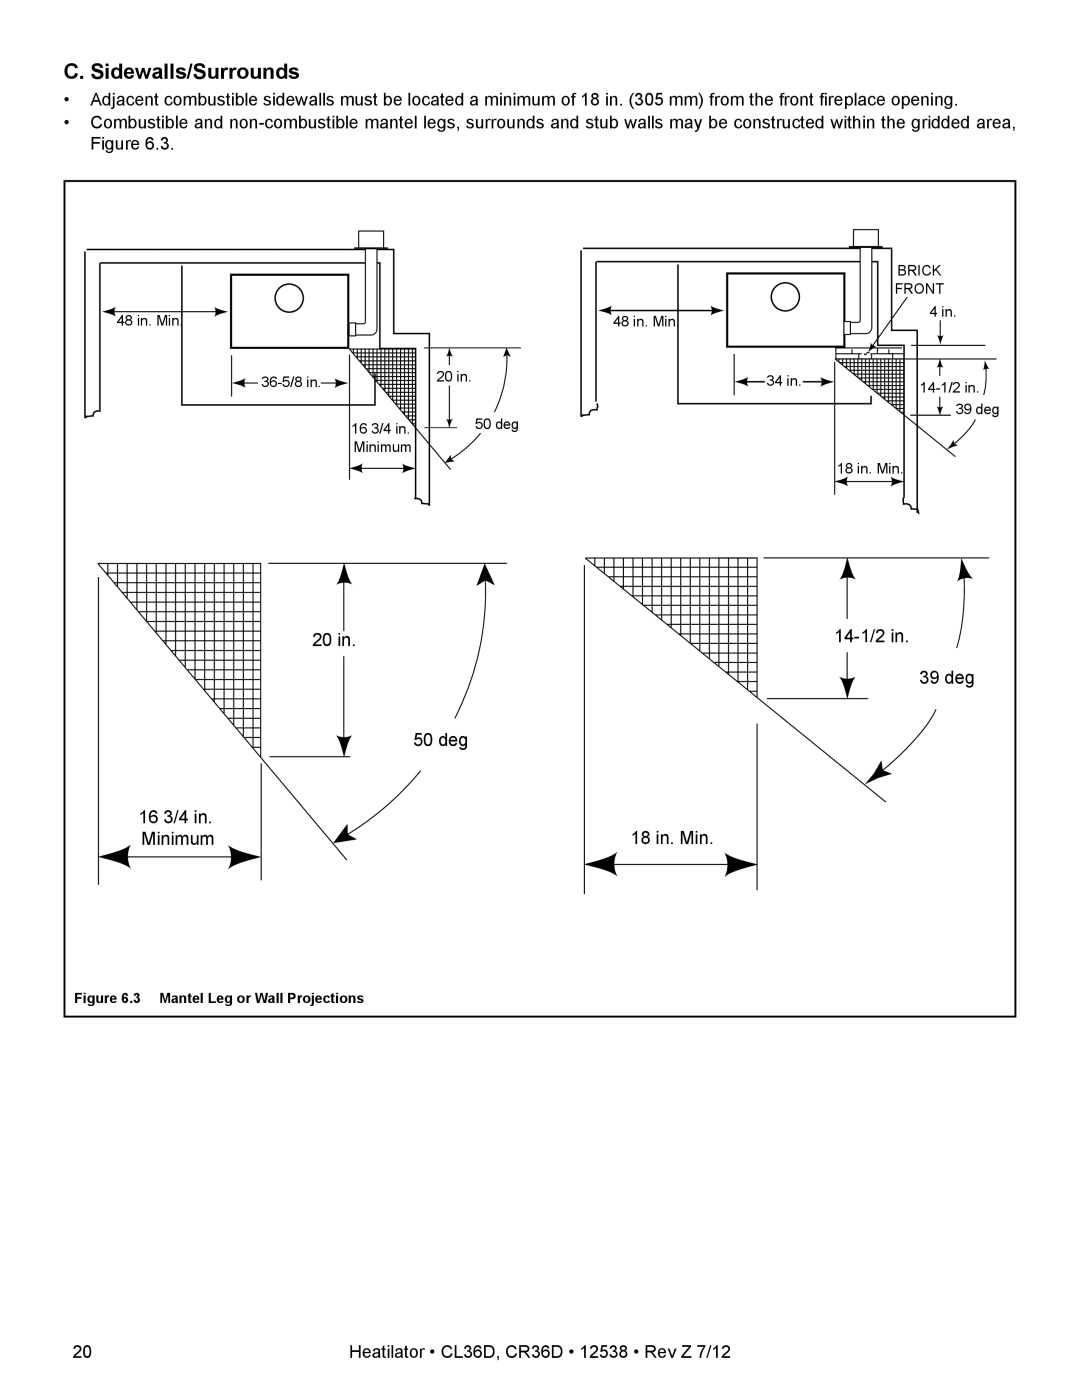 Heatiator CL36D owner manual C. Sidewalls/Surrounds, 20 in, 39 deg, 50 deg, 16 3/4 in, 18 in. Min, Minimum 